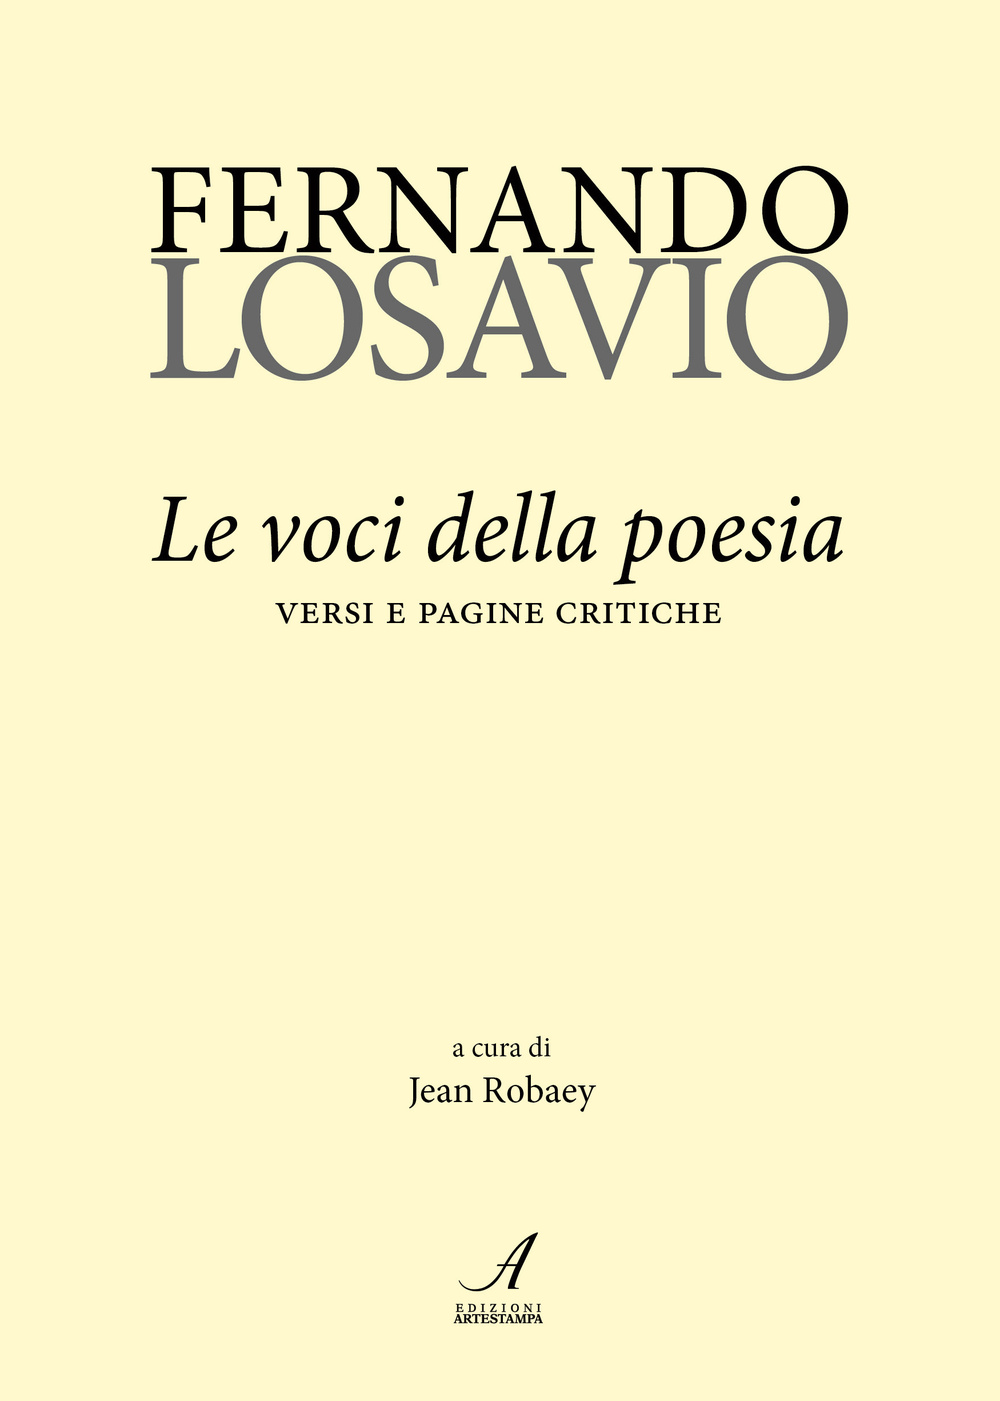 Fernando Losavio. Le voci della poesia. Versi e pagine critiche